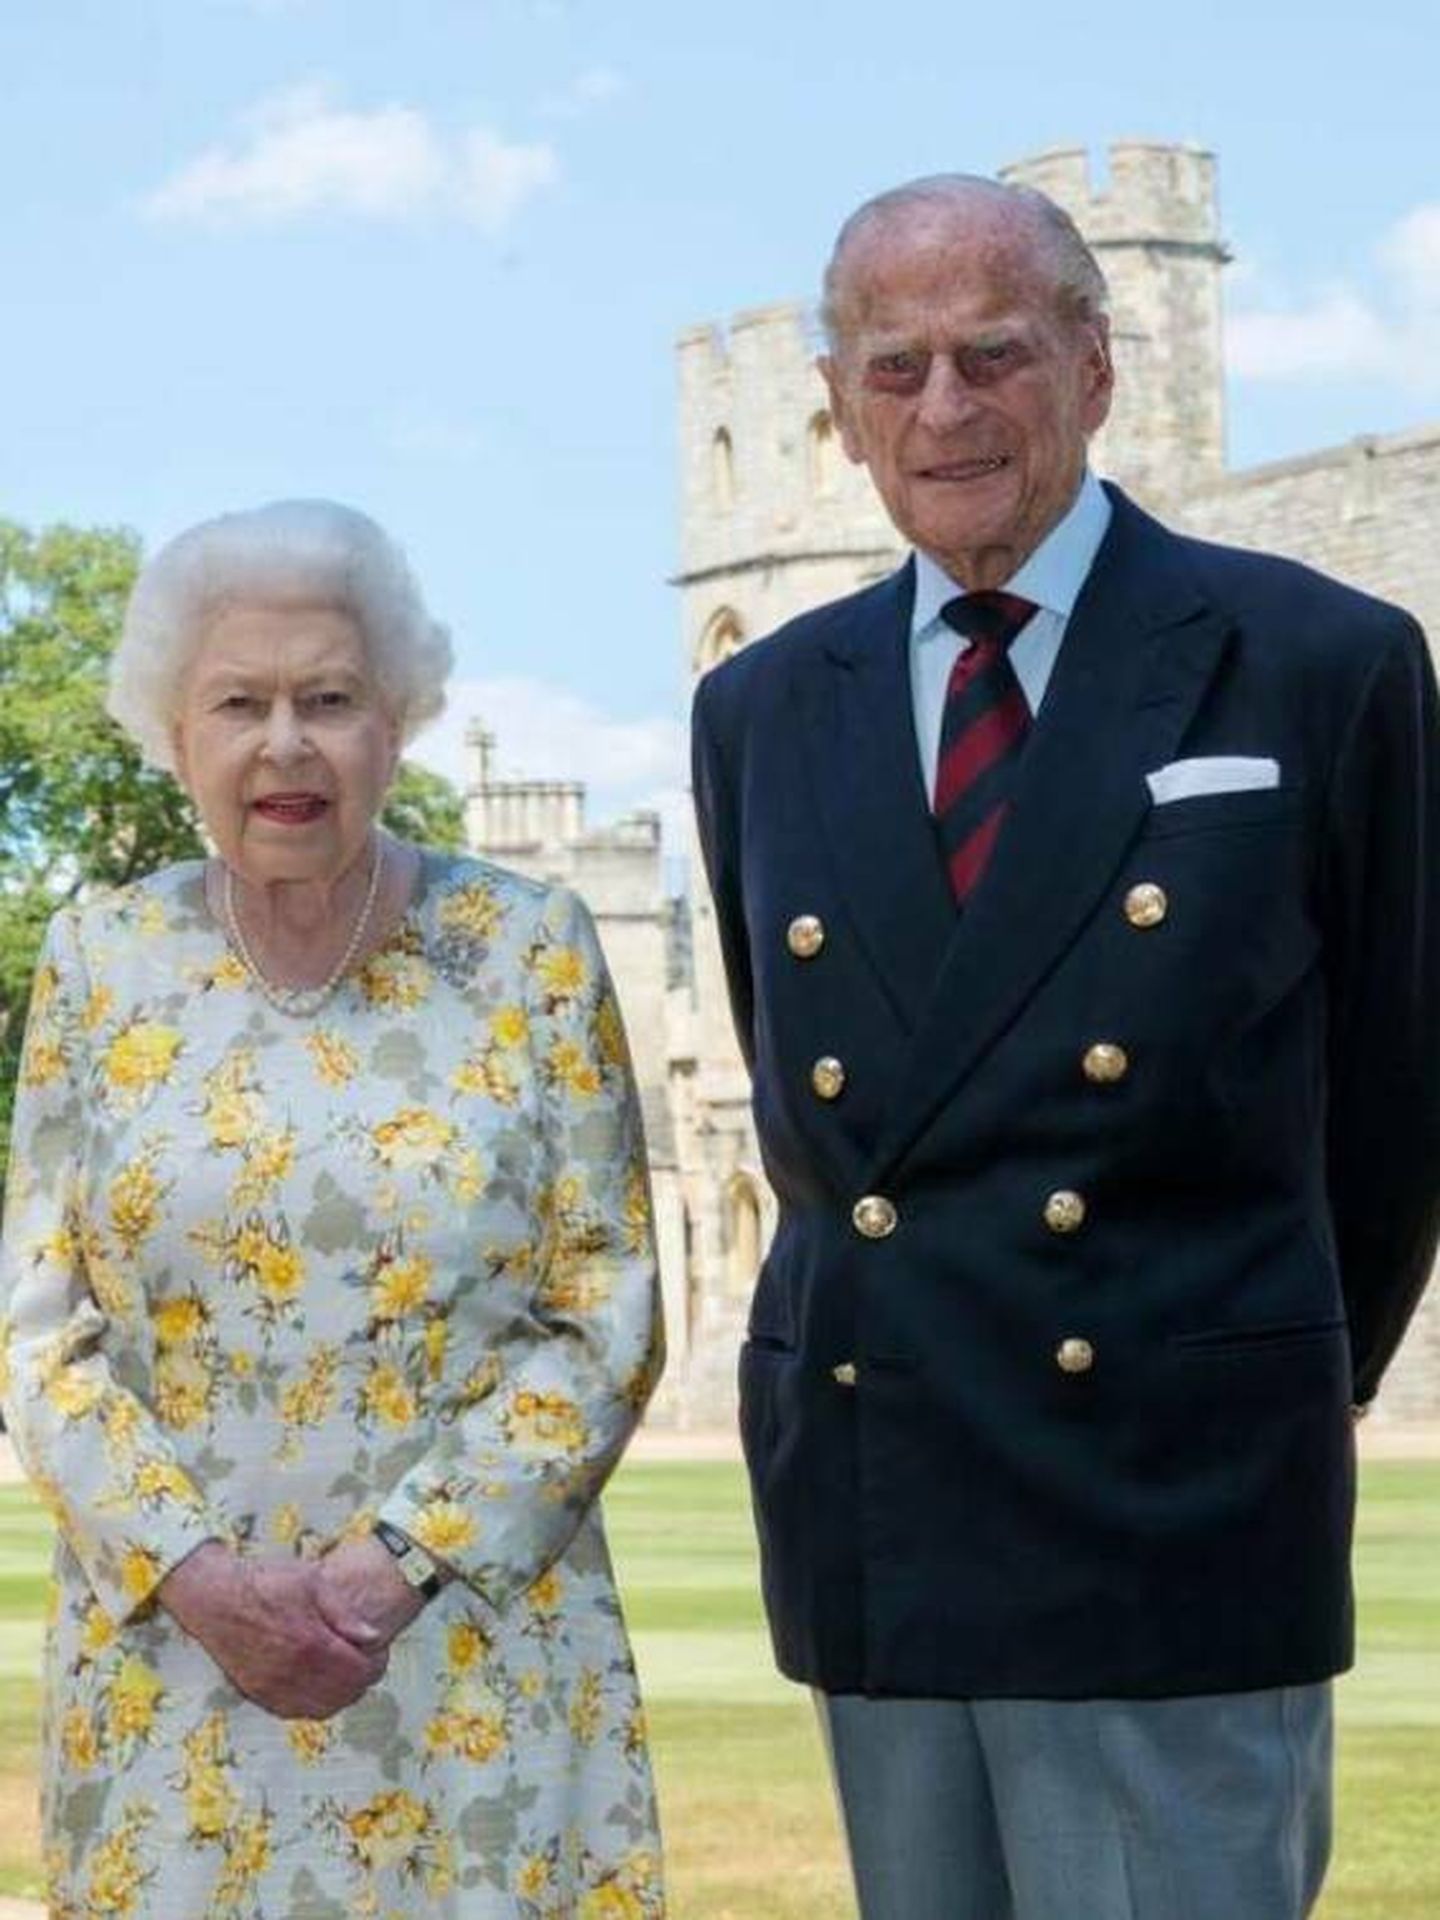 El duque de Edimburgo luciendo la chaqueta similar a la que ha lucido su nieta. (Buckingham Palace)